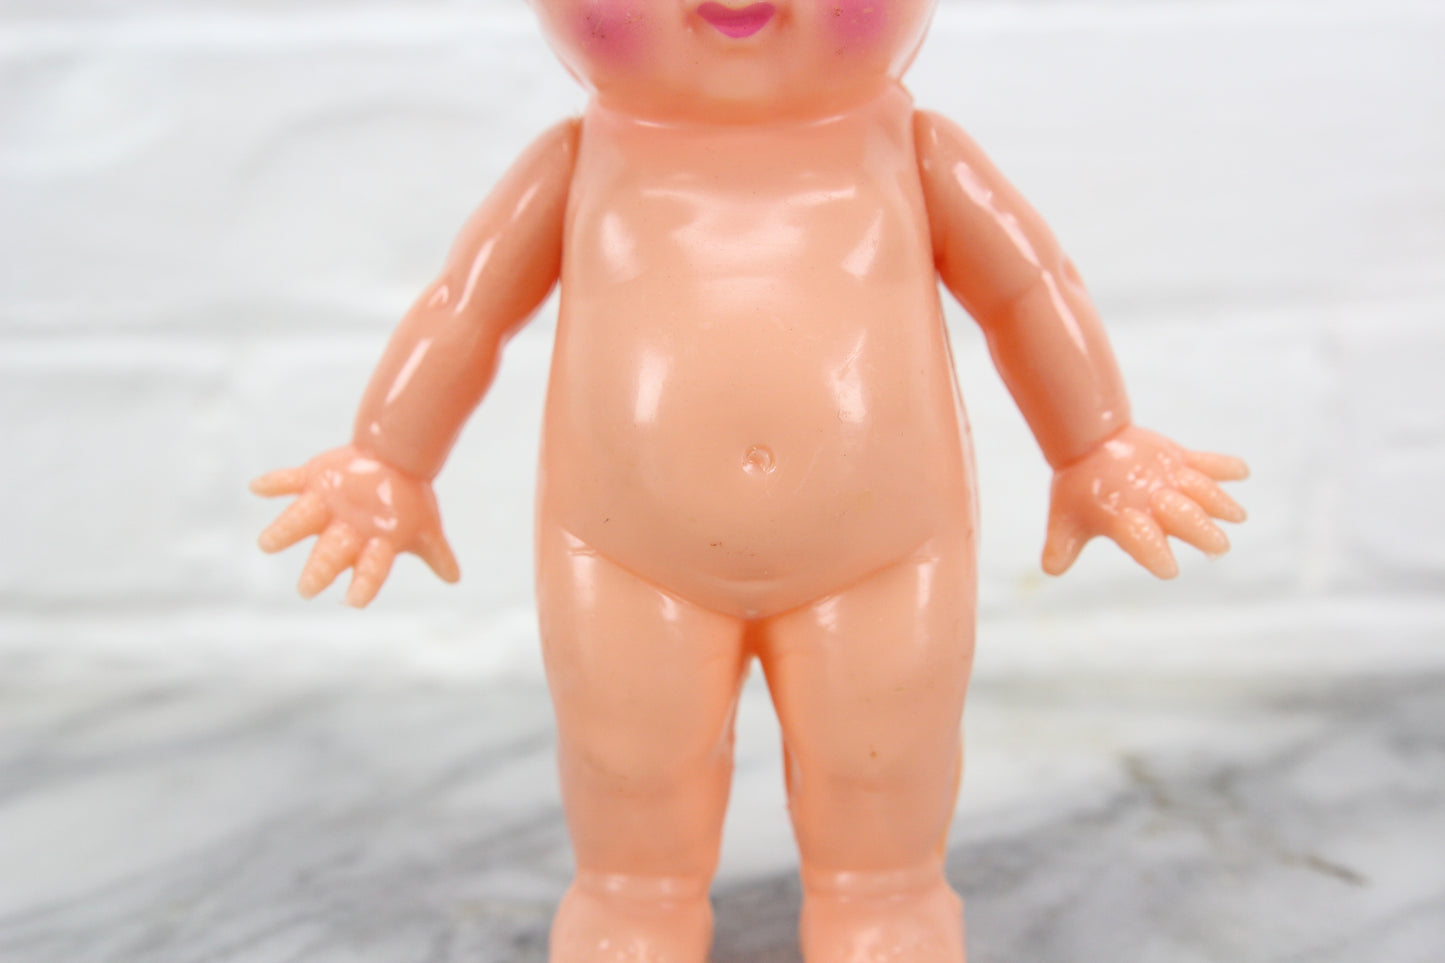 Hard Plastic Kewpie-Like Doll by Irwin, 6"